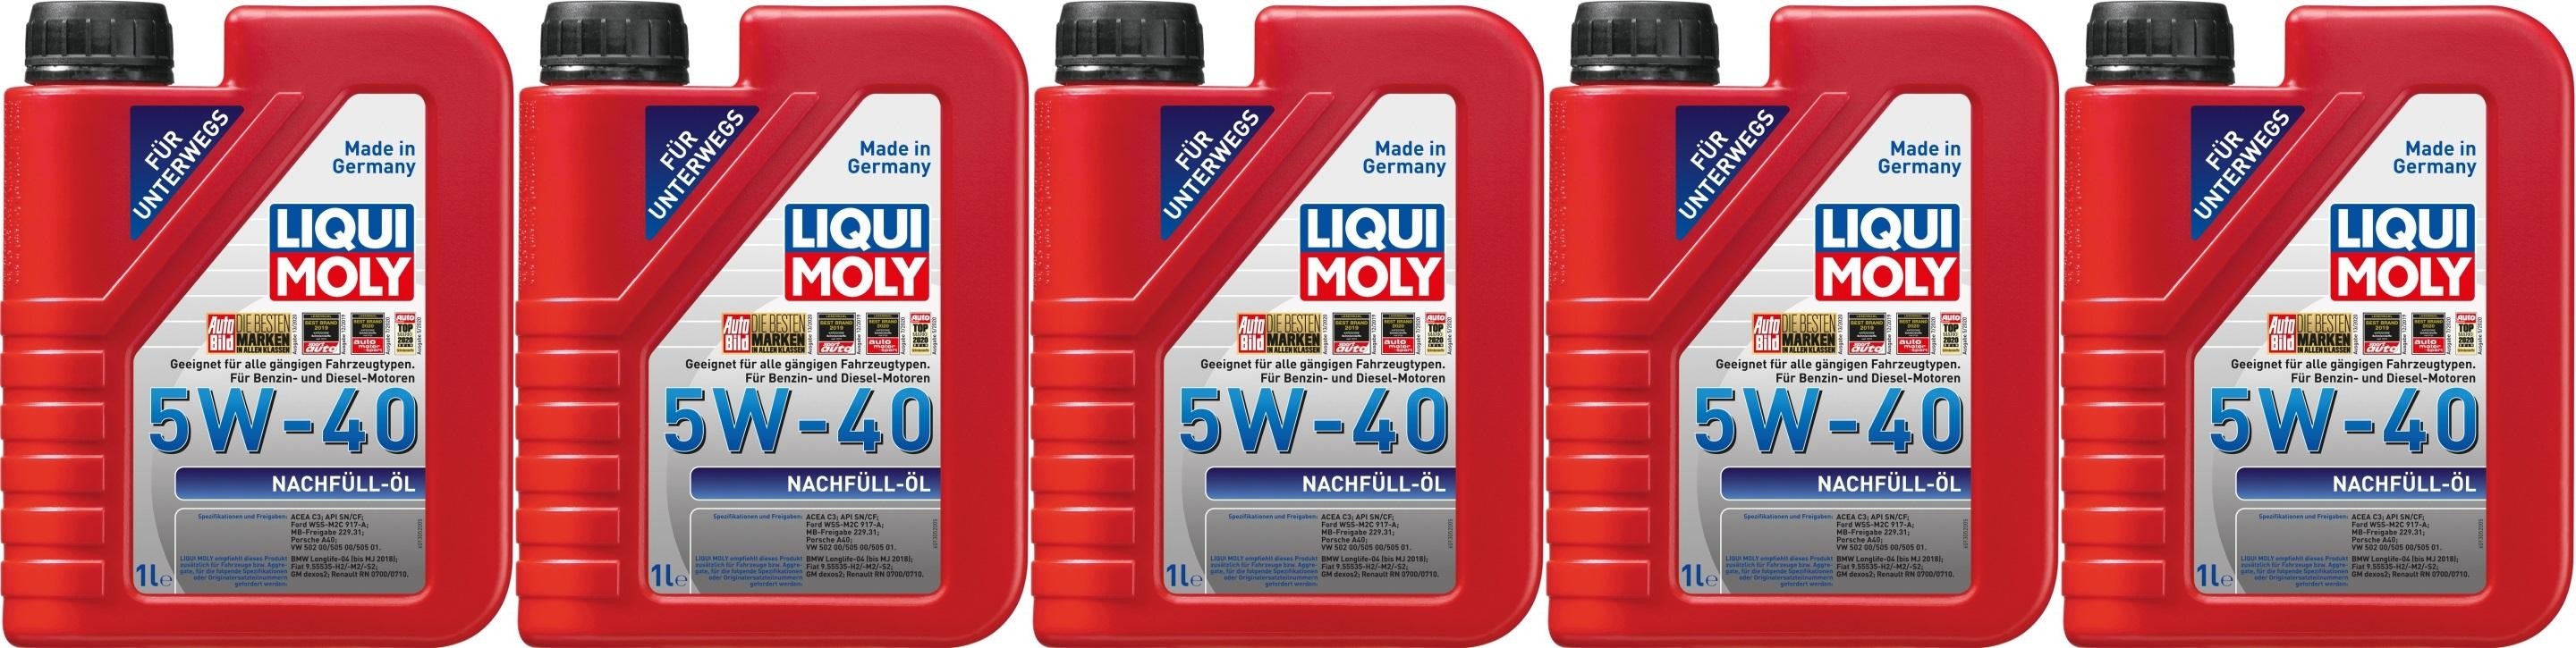 Liqui Moly 1305 Nachfüll Öl 5W-40 Motoröl 5x 1l = 5